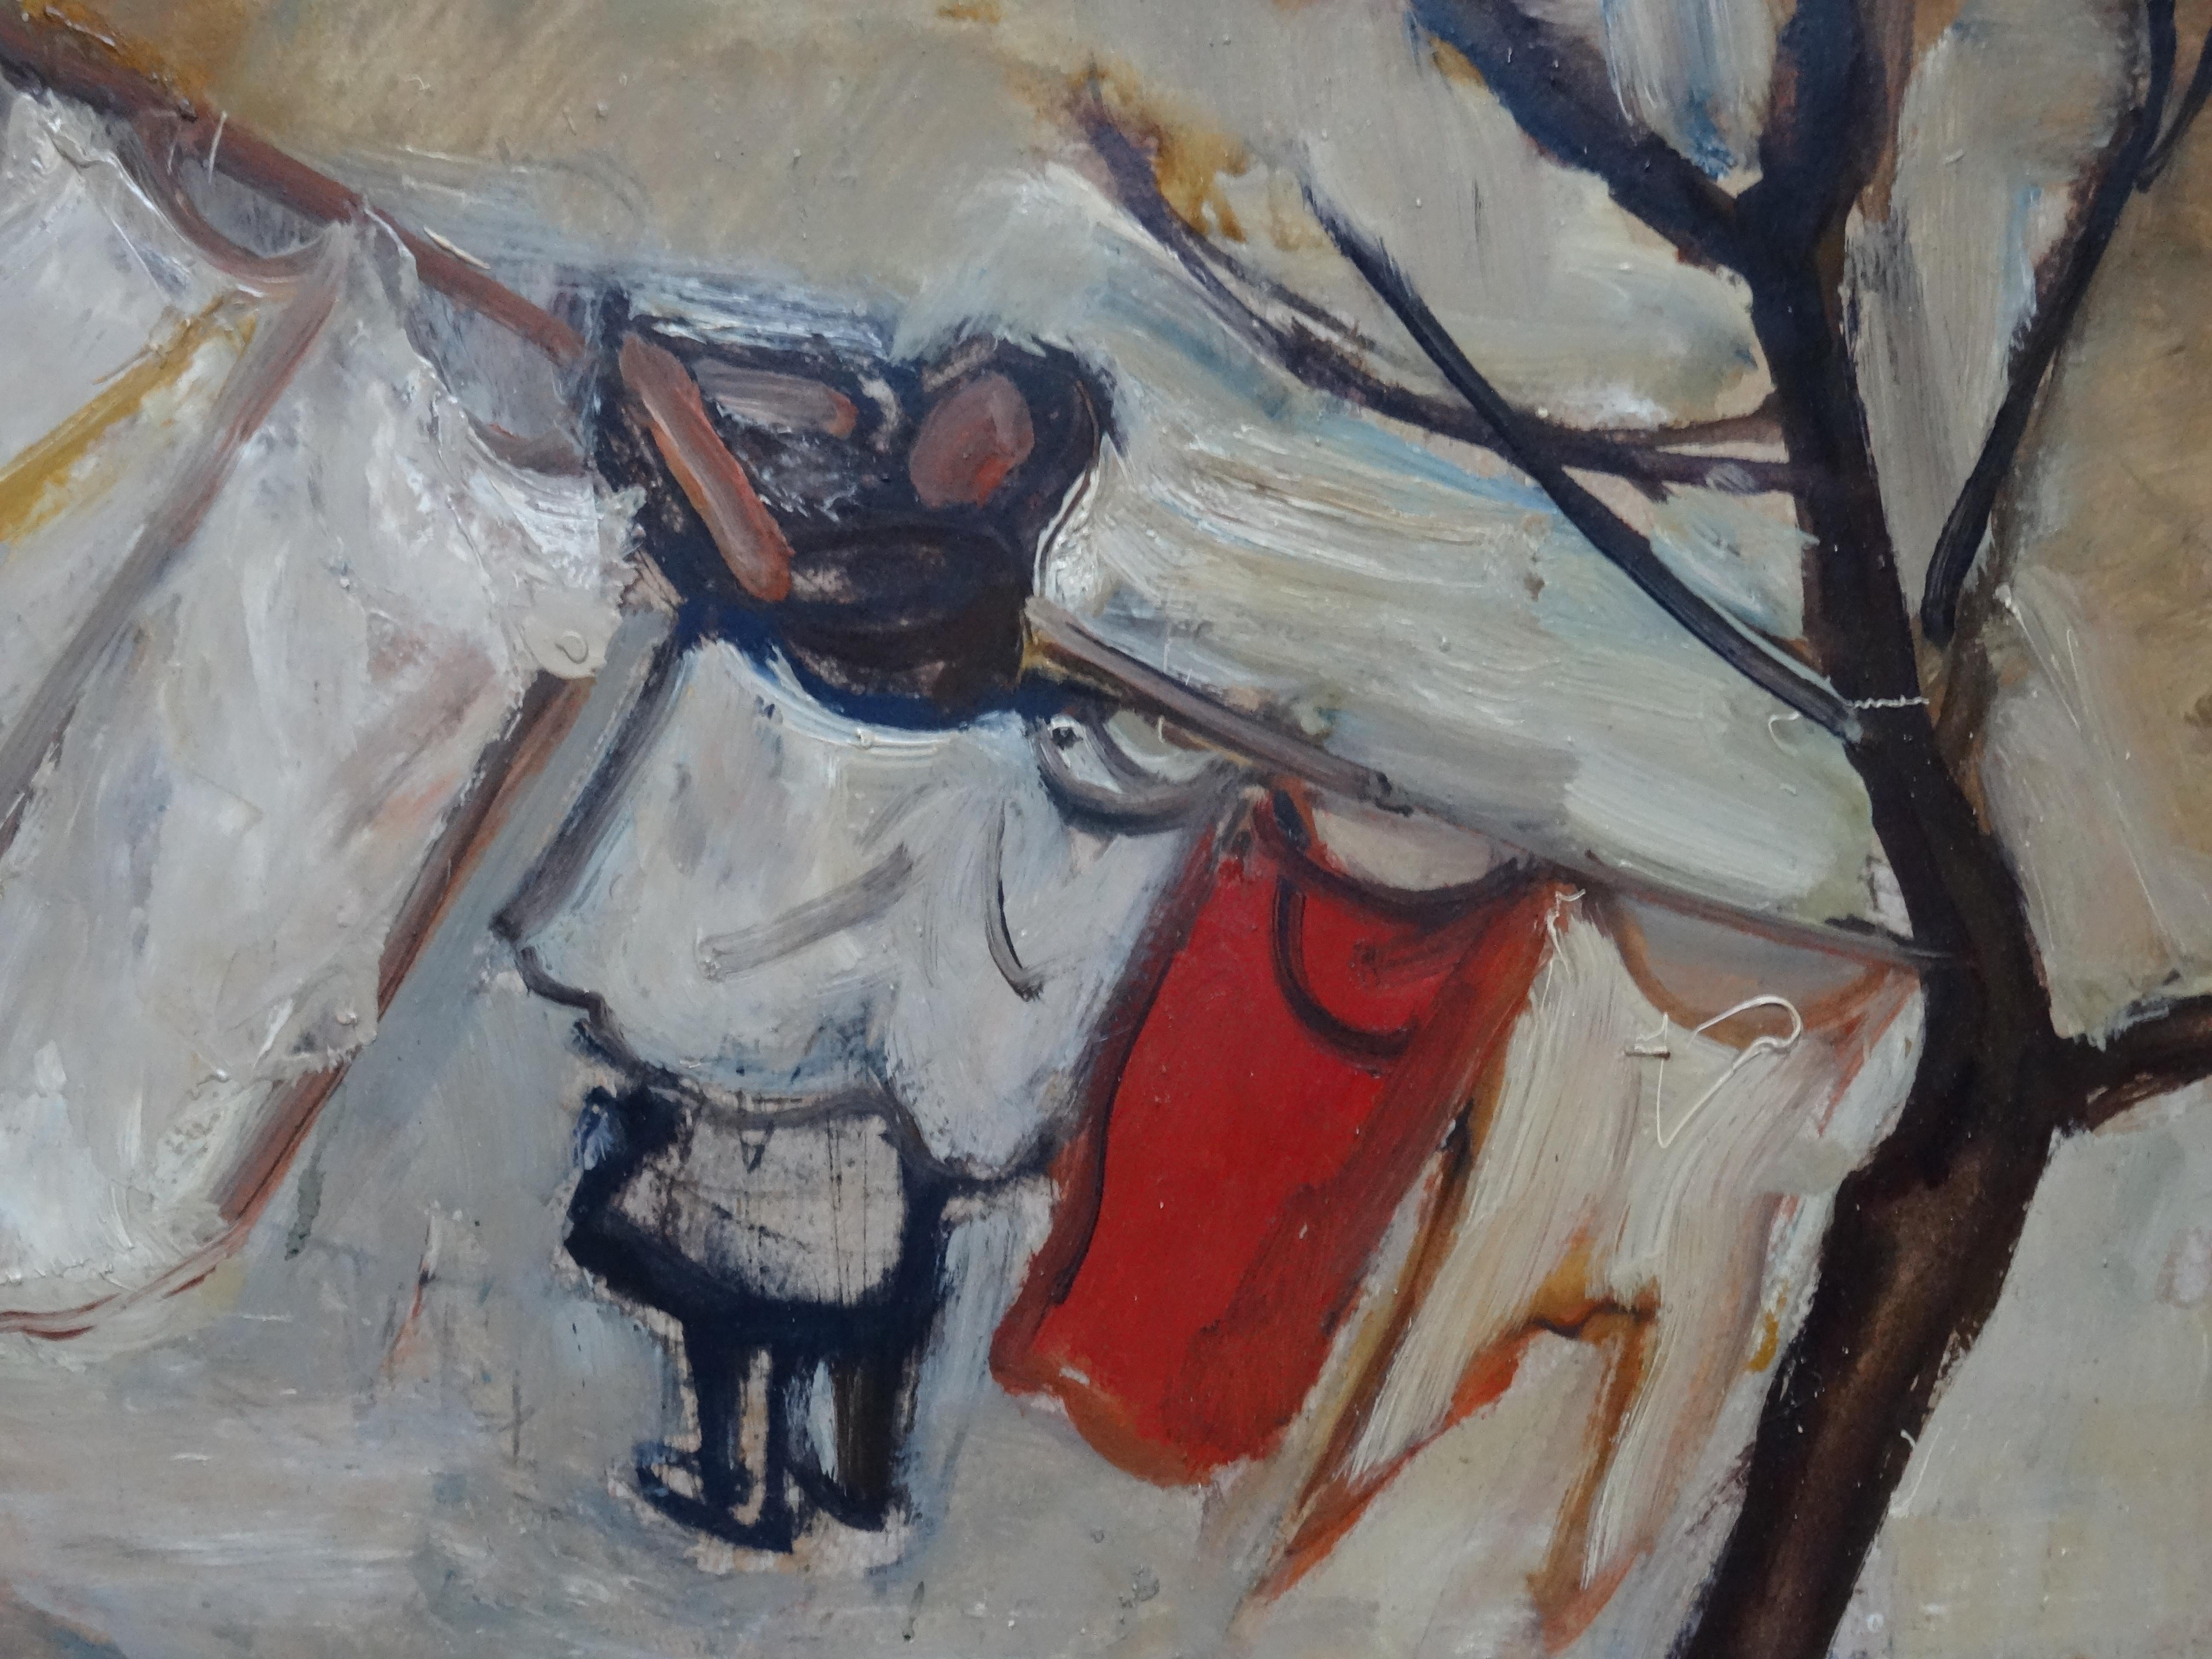 The laundry is drying  1950, huile sur carton, 51x74 cm - Fauvisme Painting par Biruta Baumane